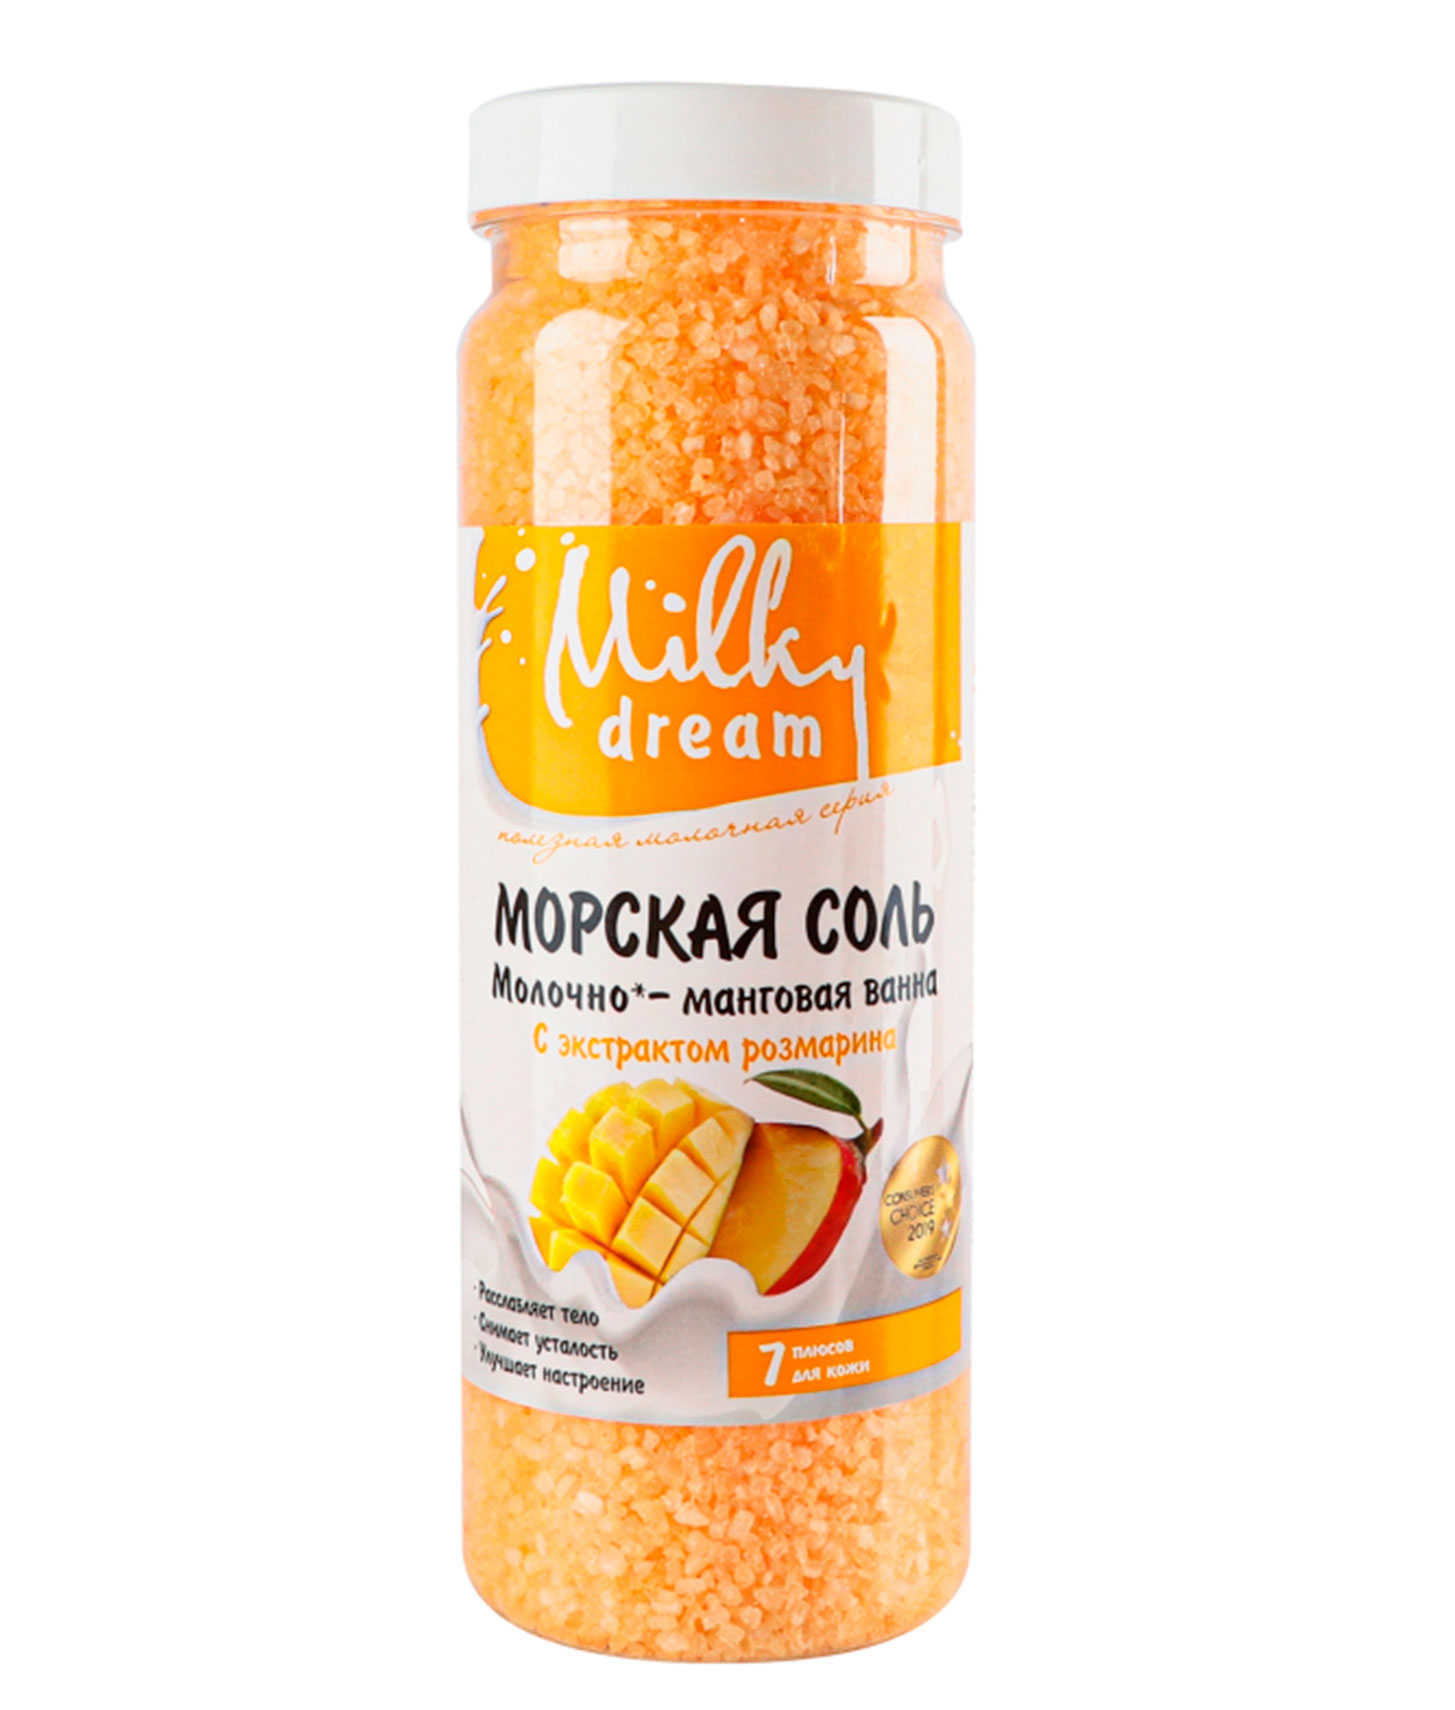 Морская соль Milky Dream "Молочно-манговая ванна" 700 г